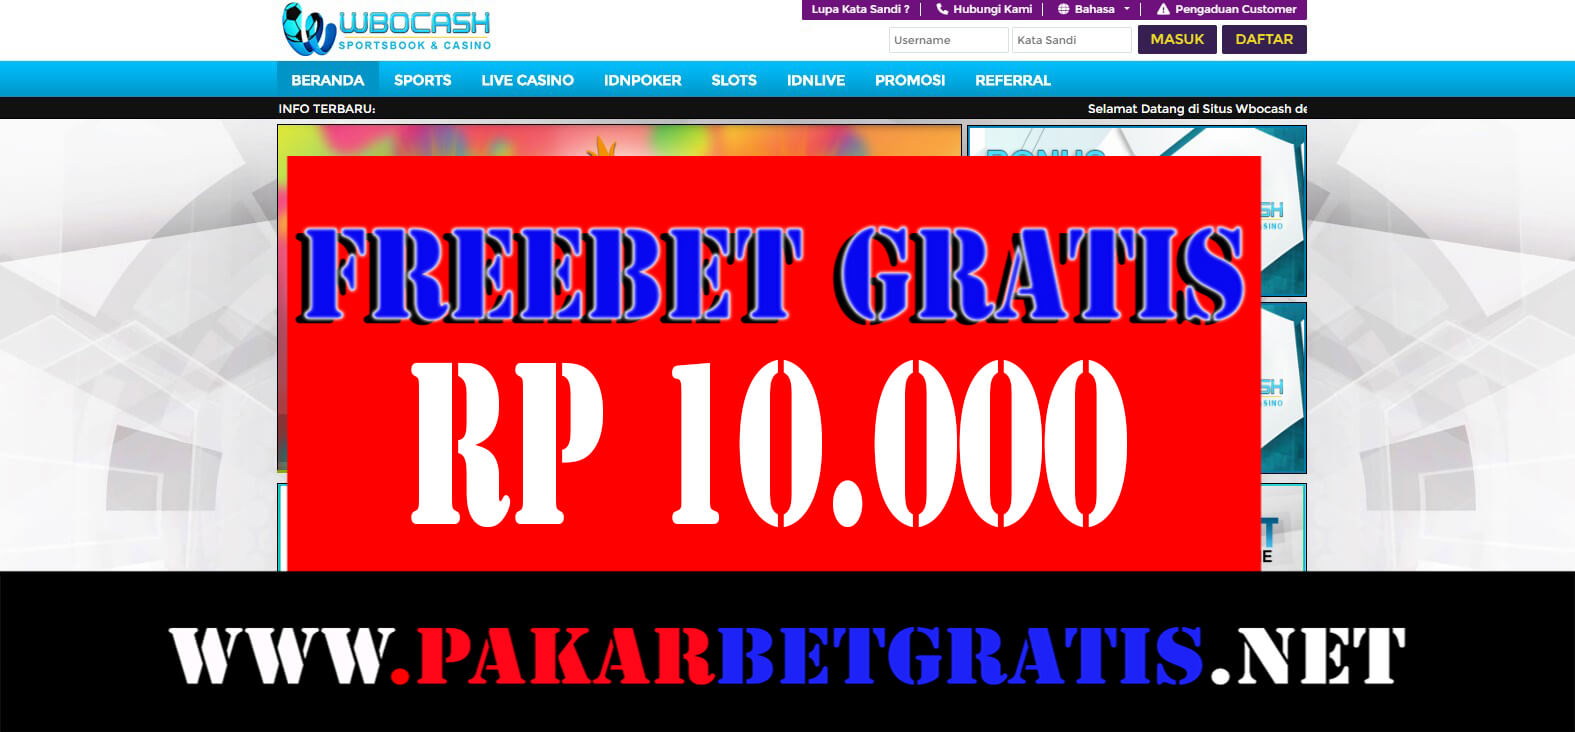 Freebet gratis wbocash Rp 10.000 Tanpa deposit